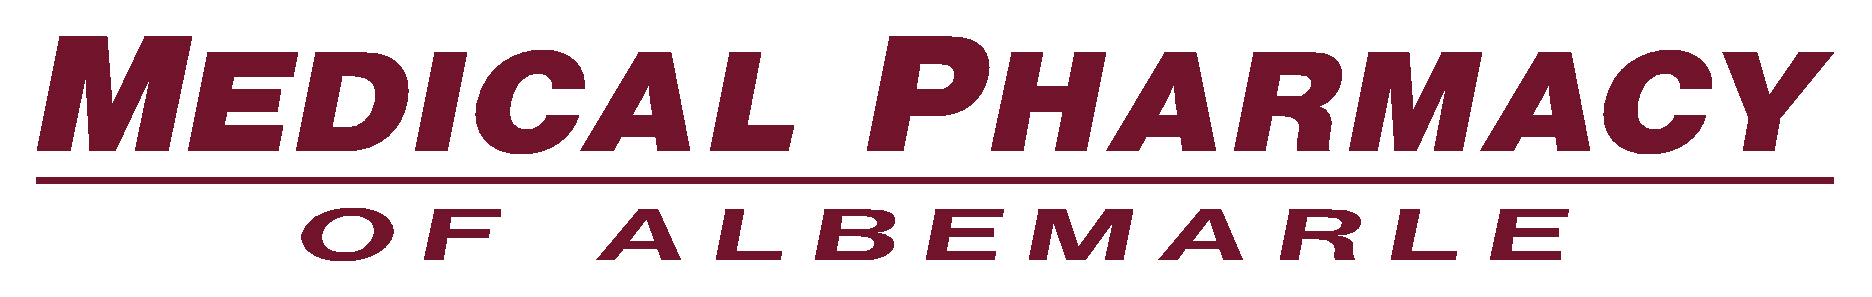 Medical Pharmacy Of Albemarle